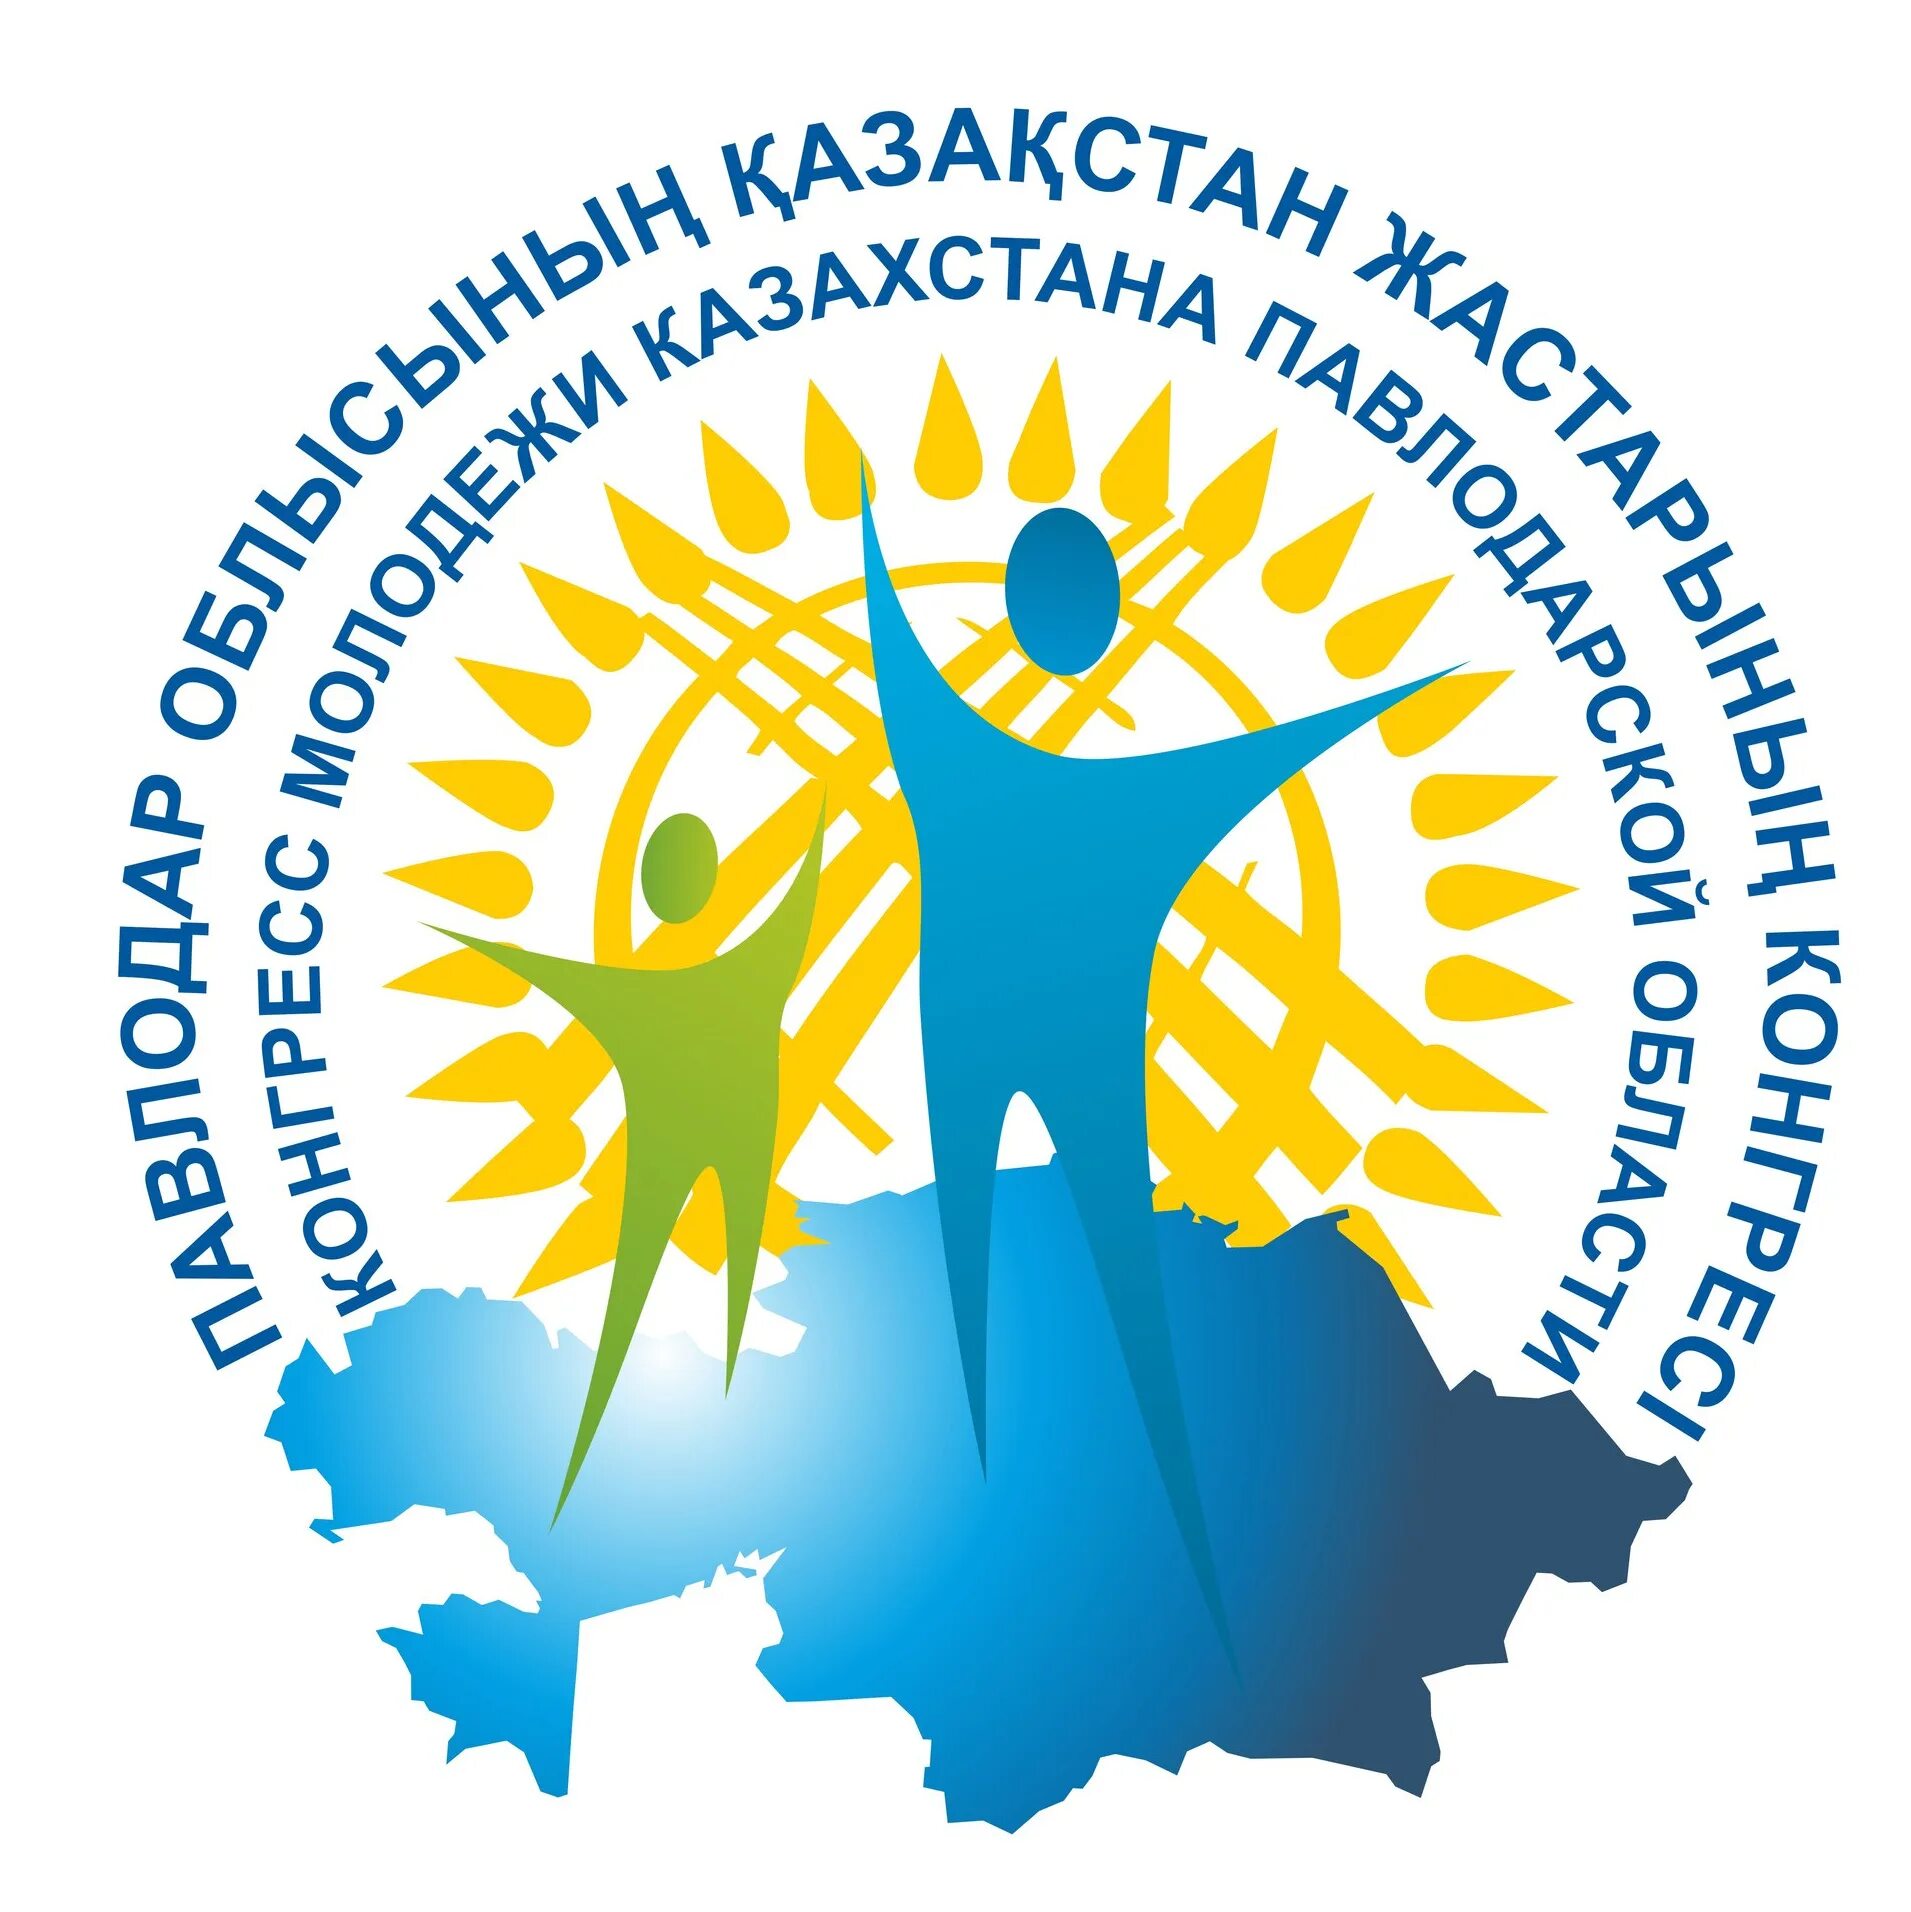 Региональные организации рк. Конгресс молодежи Казахстана. Общественные организации. Логотипы молодежных организаций. Логотипа молодёжной политики РК.